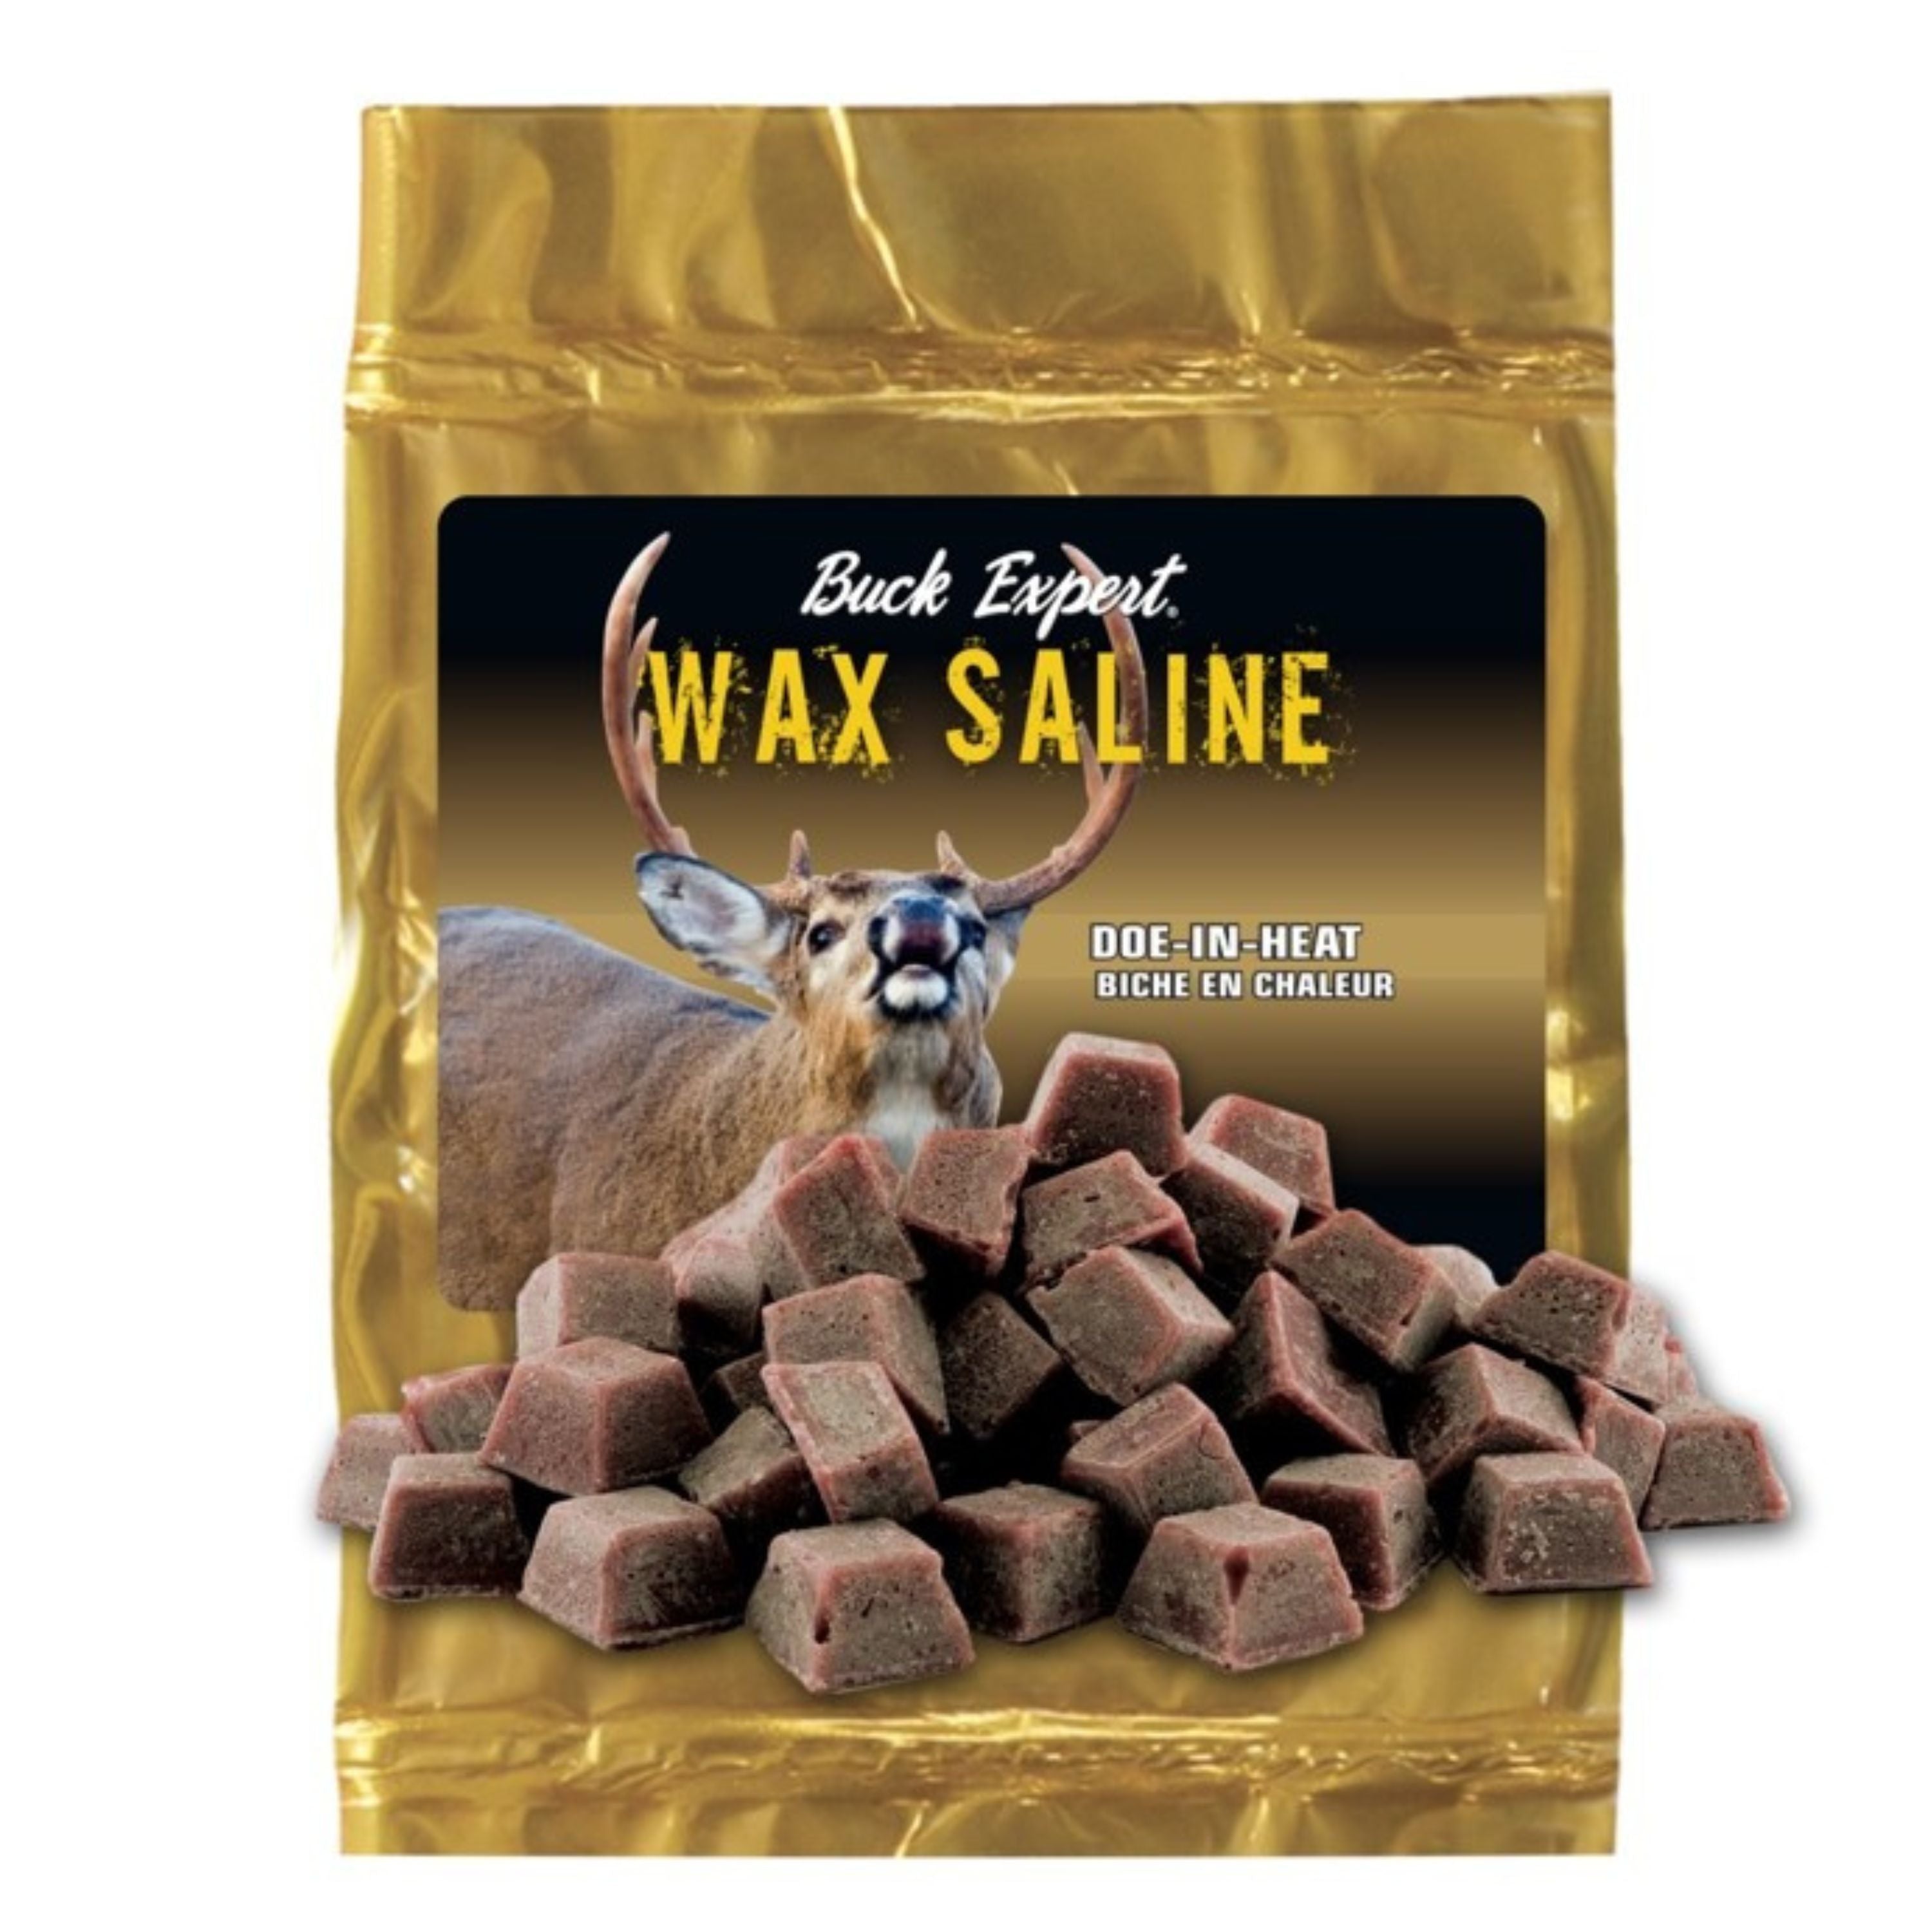 "Wax Saline" - Doe in heat